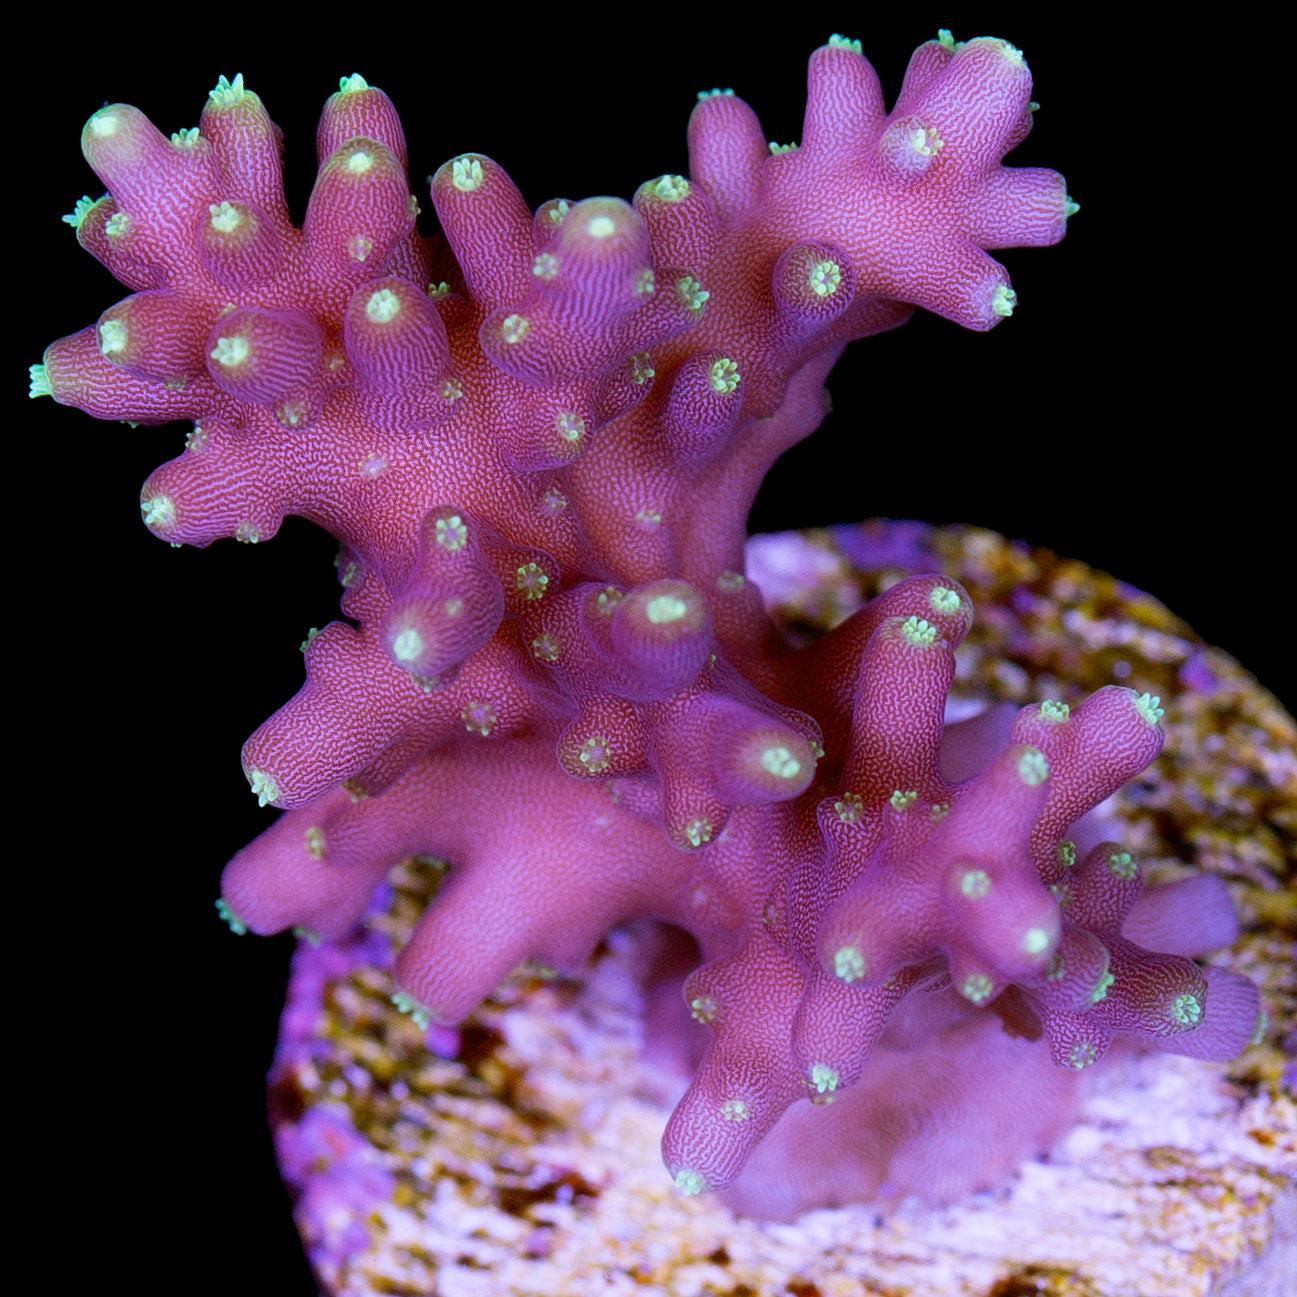 Vivid Space Dragon Acropora Coral